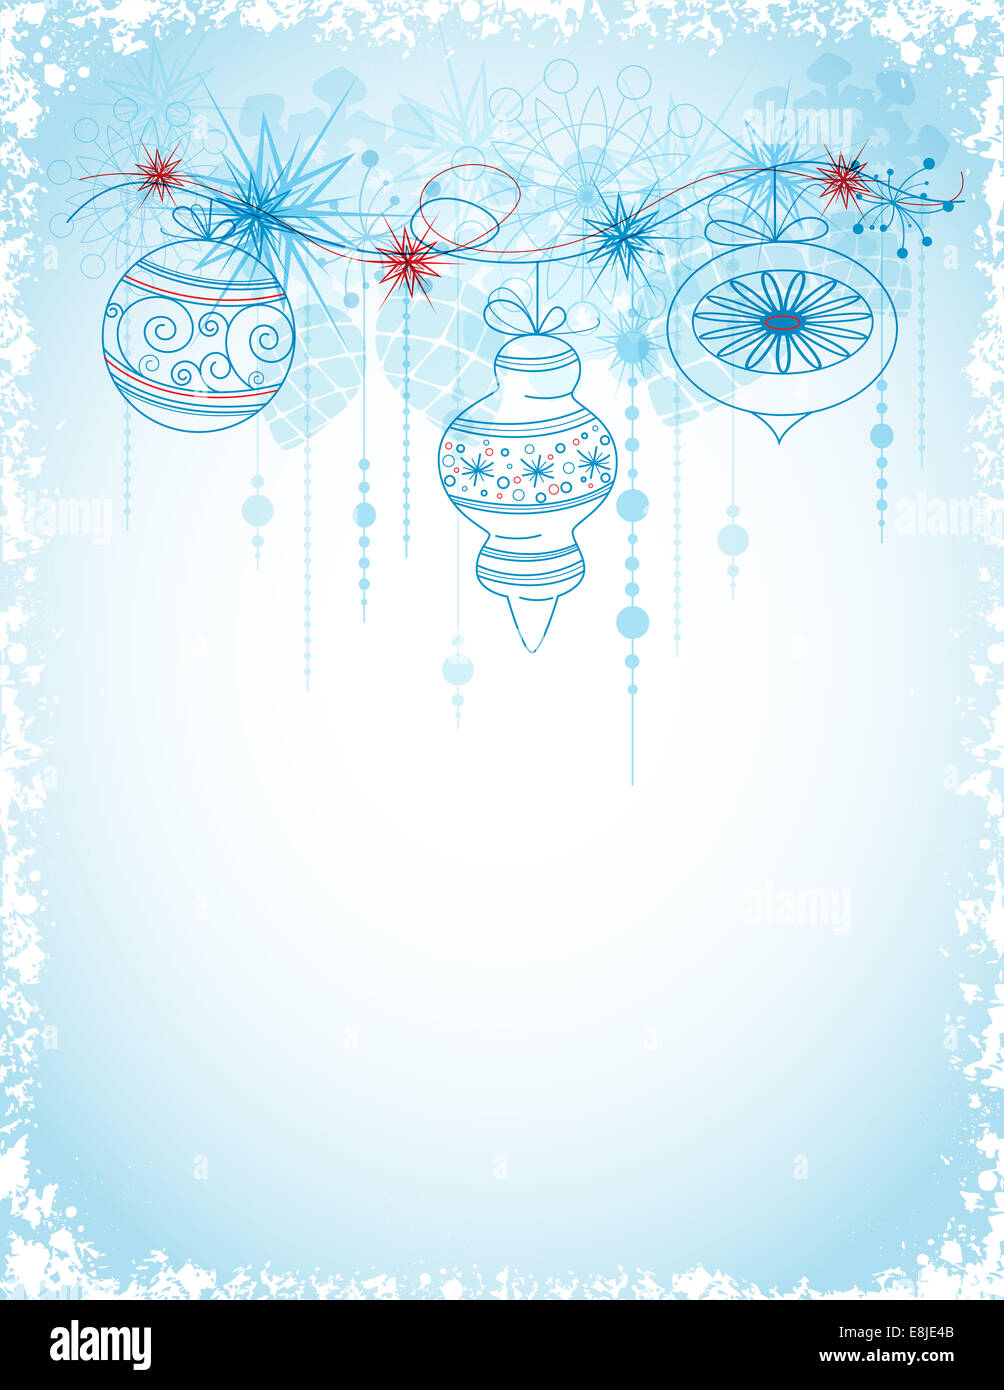 Blue scheda di natale con decorazioni e fiocchi di neve Foto Stock